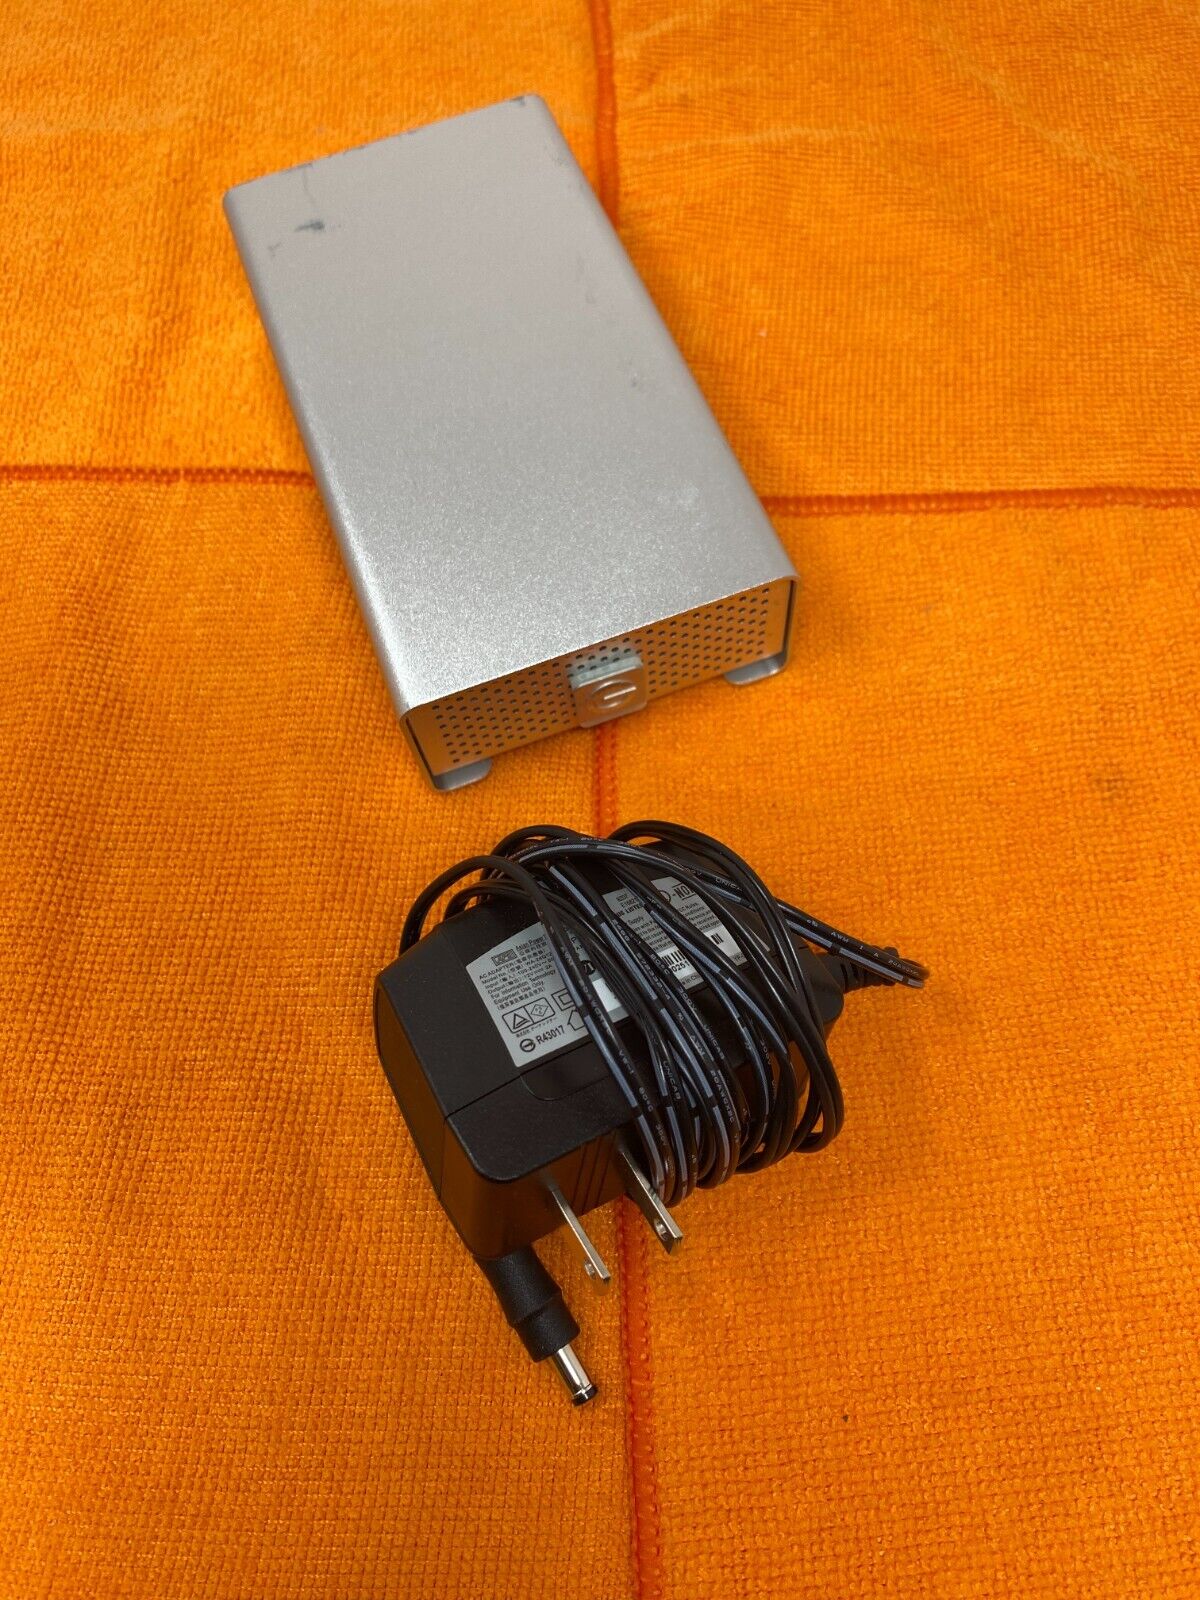 G-TECHNOLOGY G-RAID MINI 1TB 7200RPM eSATA FIREWIRE USB2 HARD DRIVE USE 18 DAYS